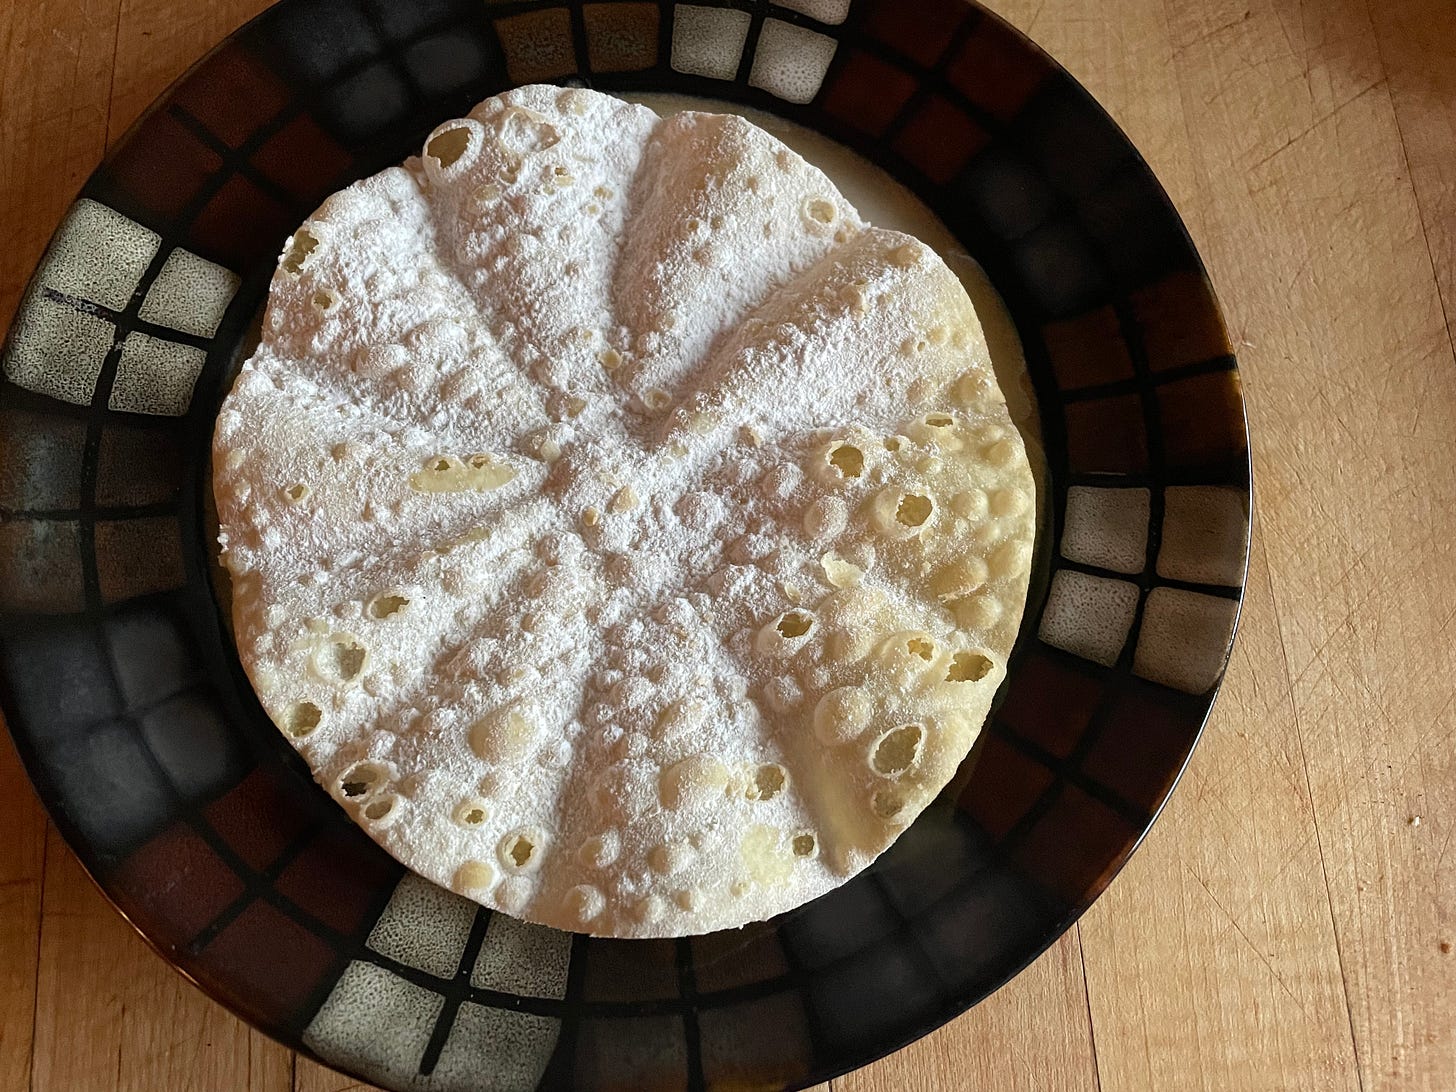 A mini Fasnachtschüechli on a plate